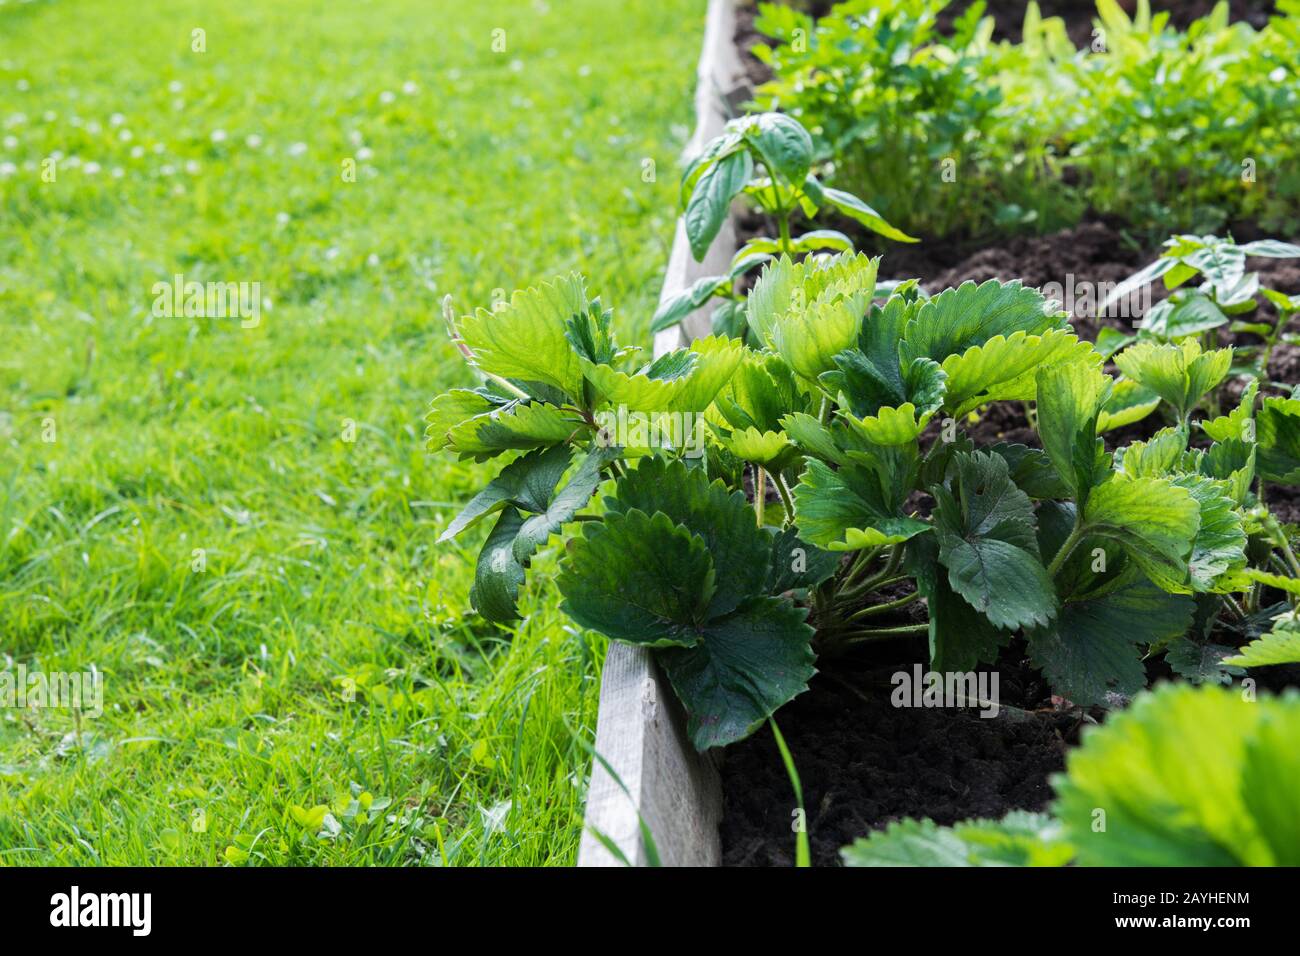 Lits de jardin de fraises, légumes et légumes verts. Jardinage. Passe-temps d'été. Gros Plan. Verts Frais extérieurs Banque D'Images